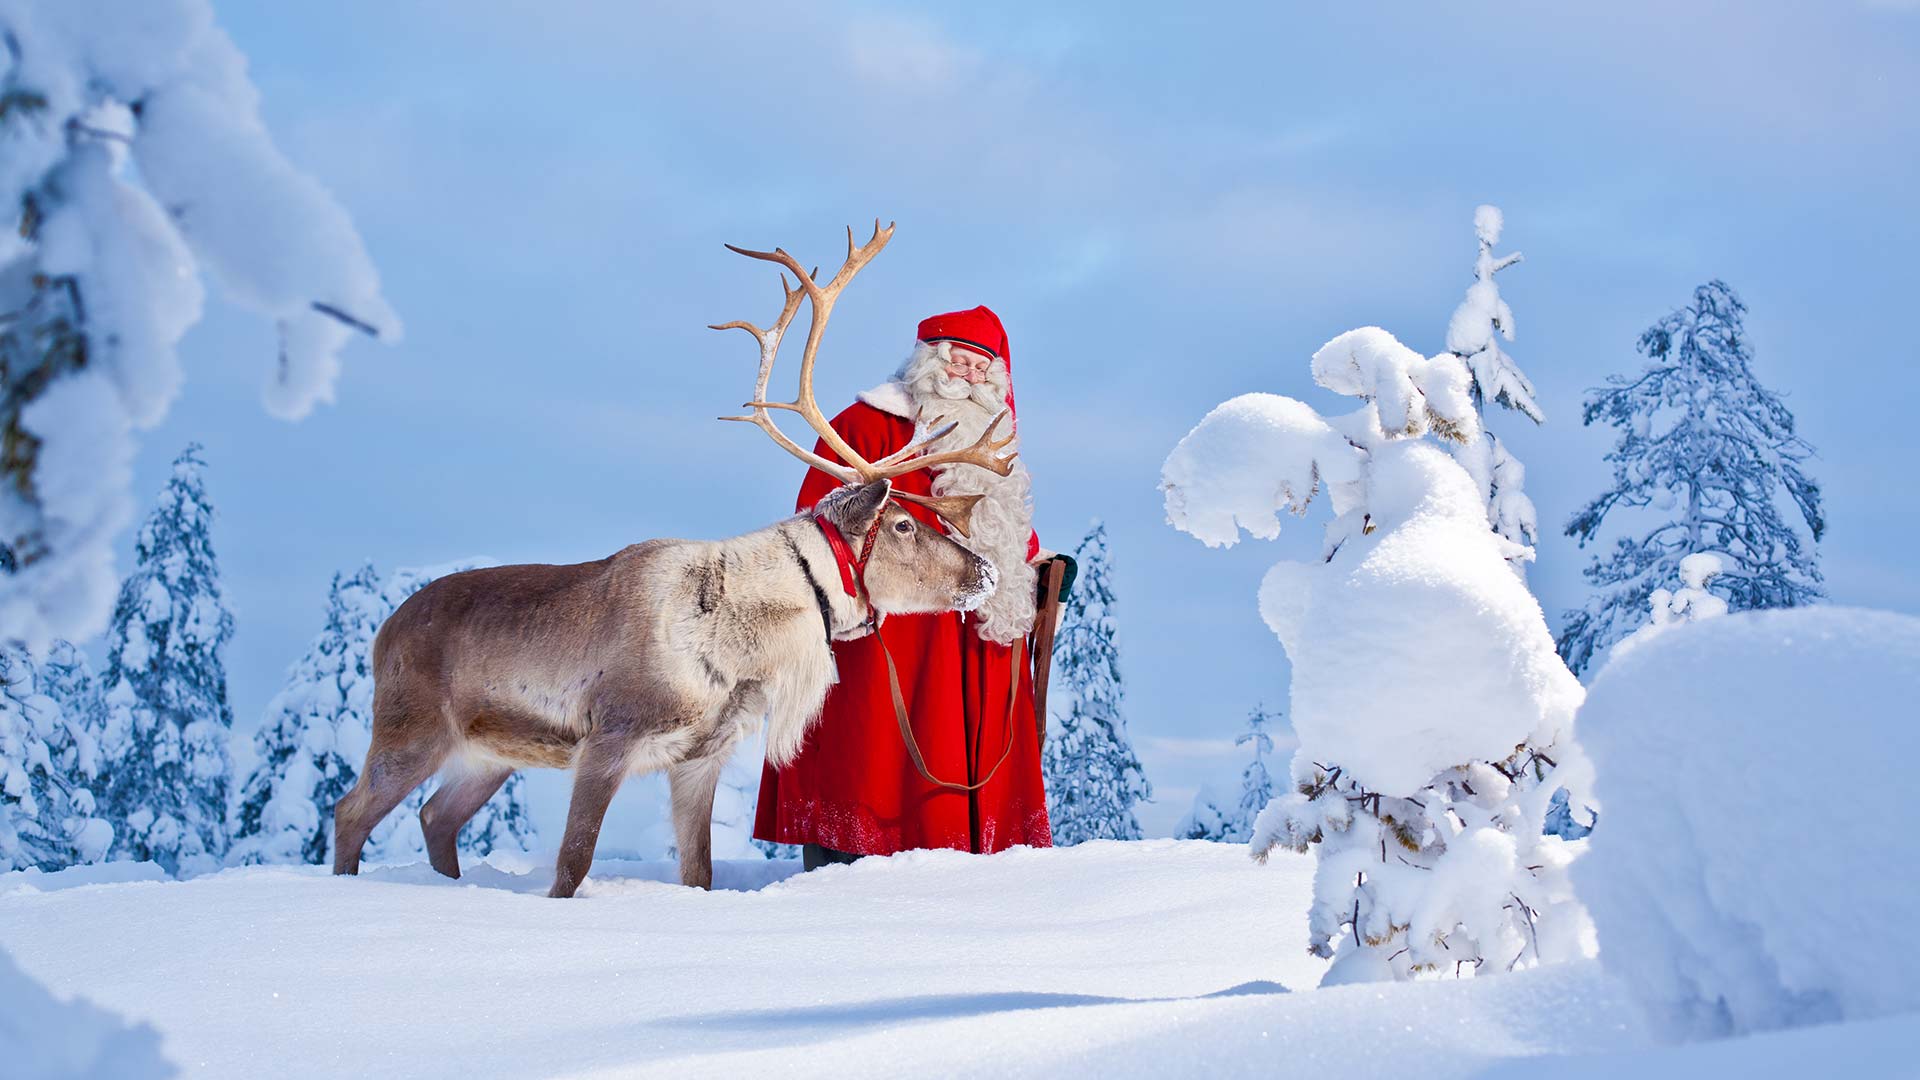 Santa At The North Pole Wallpapers Wallpaper Cave